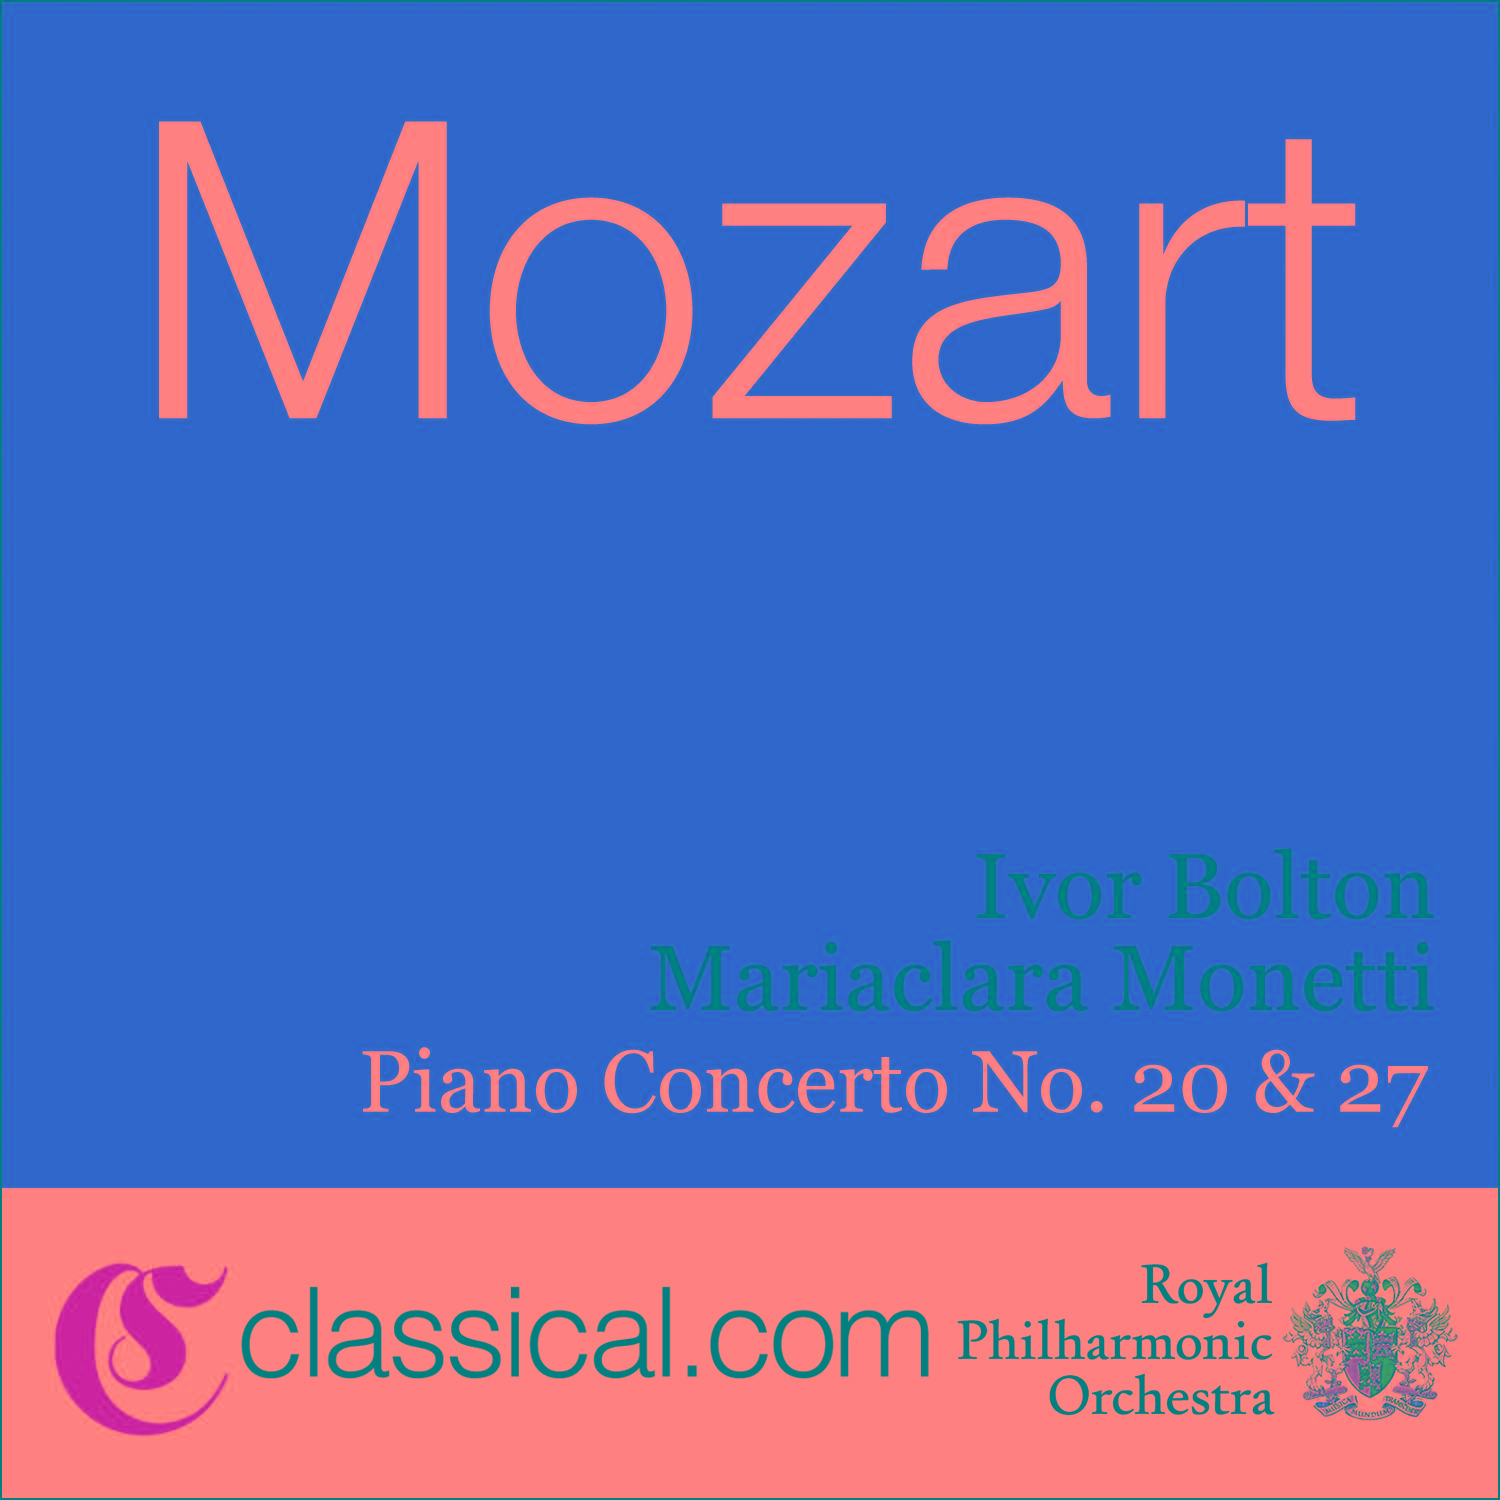 Piano Concerto No. 20 in D minor, K. 466 - Romance